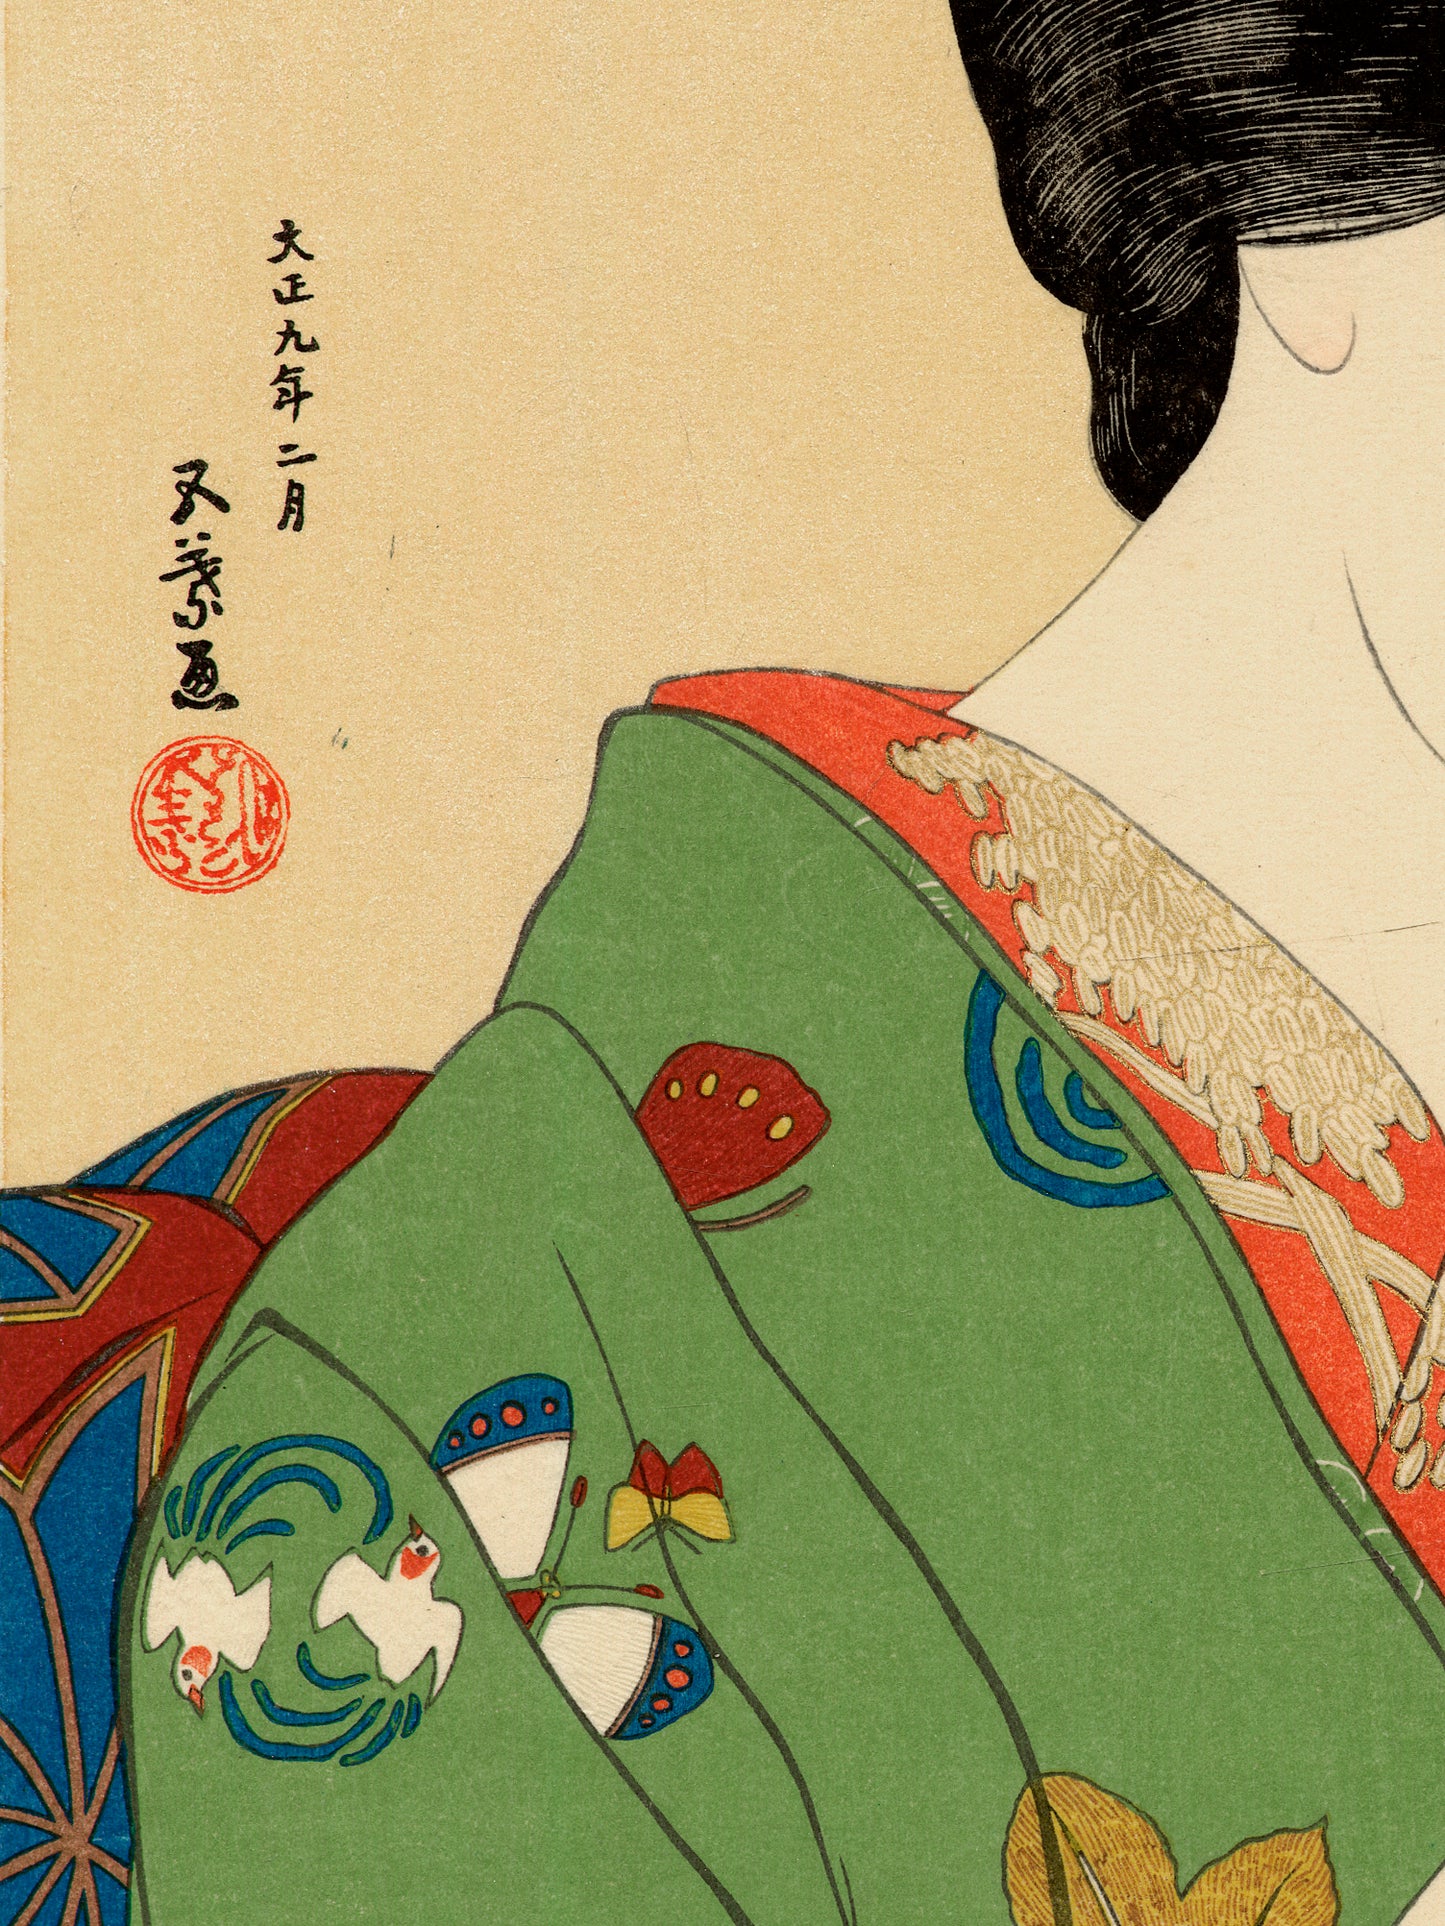 Estampe japonaise détail de l’estampe sur la nuque de la femme et son kimono d’hiver 